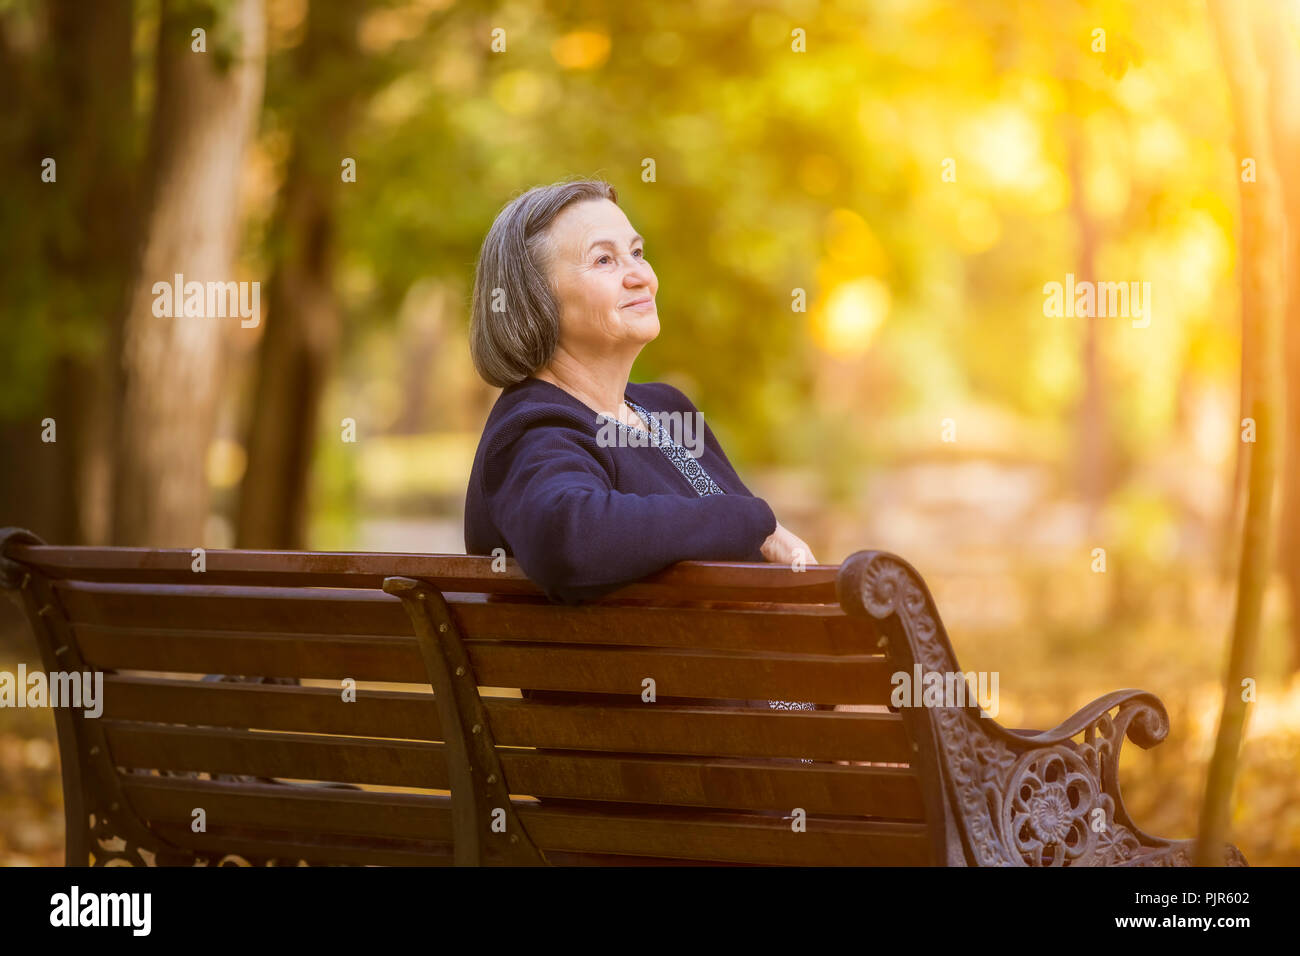 Ältere Frau sitzen auf einer Bank im Herbst Park. Gealterte Frau sitzt auf der Bank im Herbst Park aussieht und lächelnd an der Sonne. Stockfoto